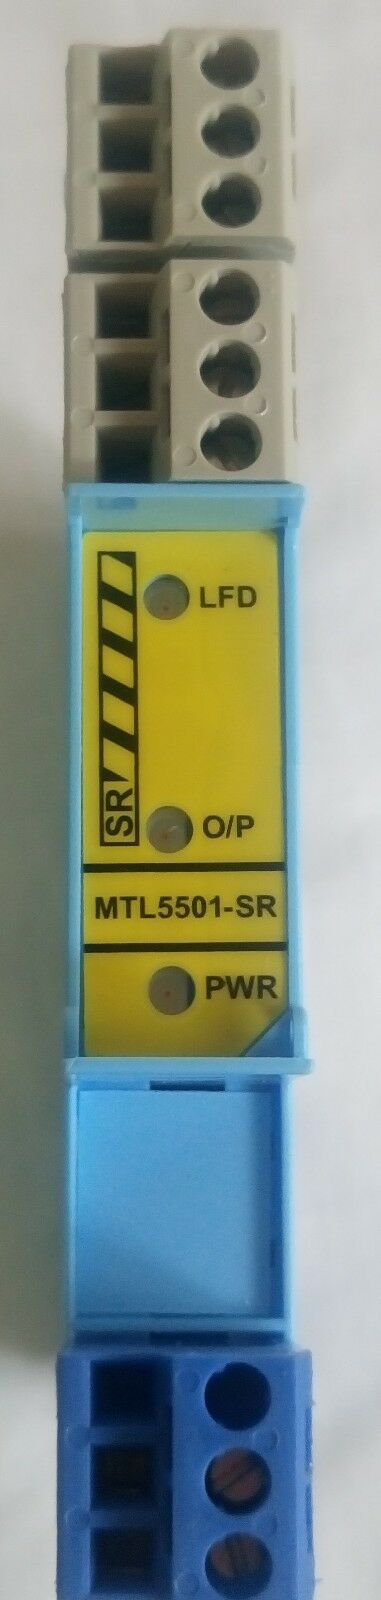 MTL 5501-sr 故障安全开关/接近探测器接口与 LFD 